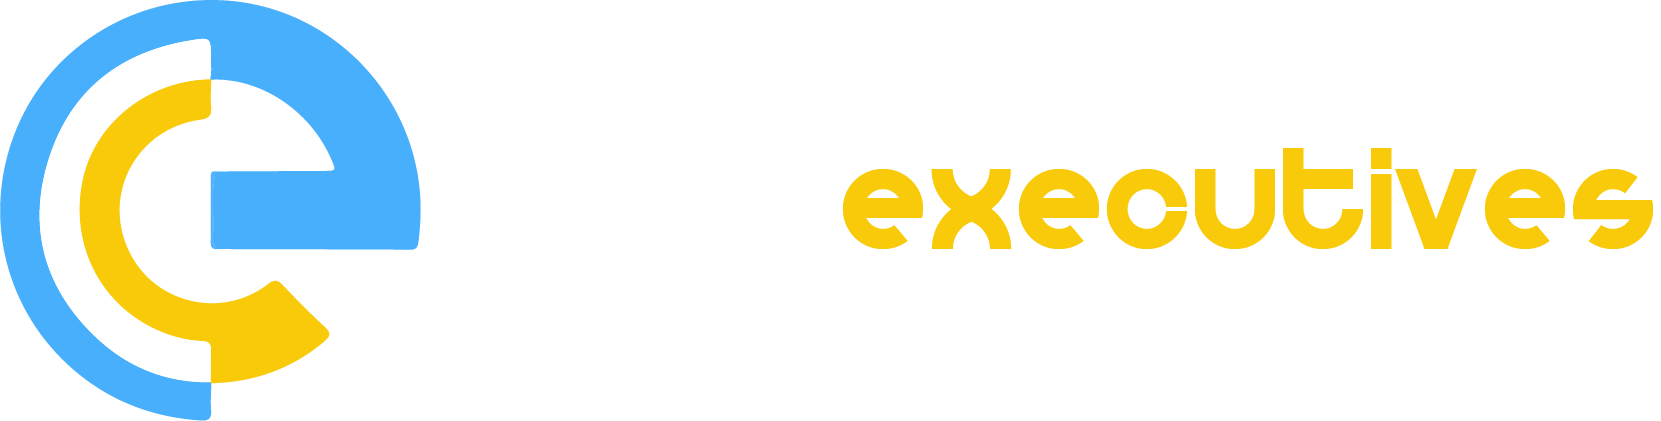 Elite Executives